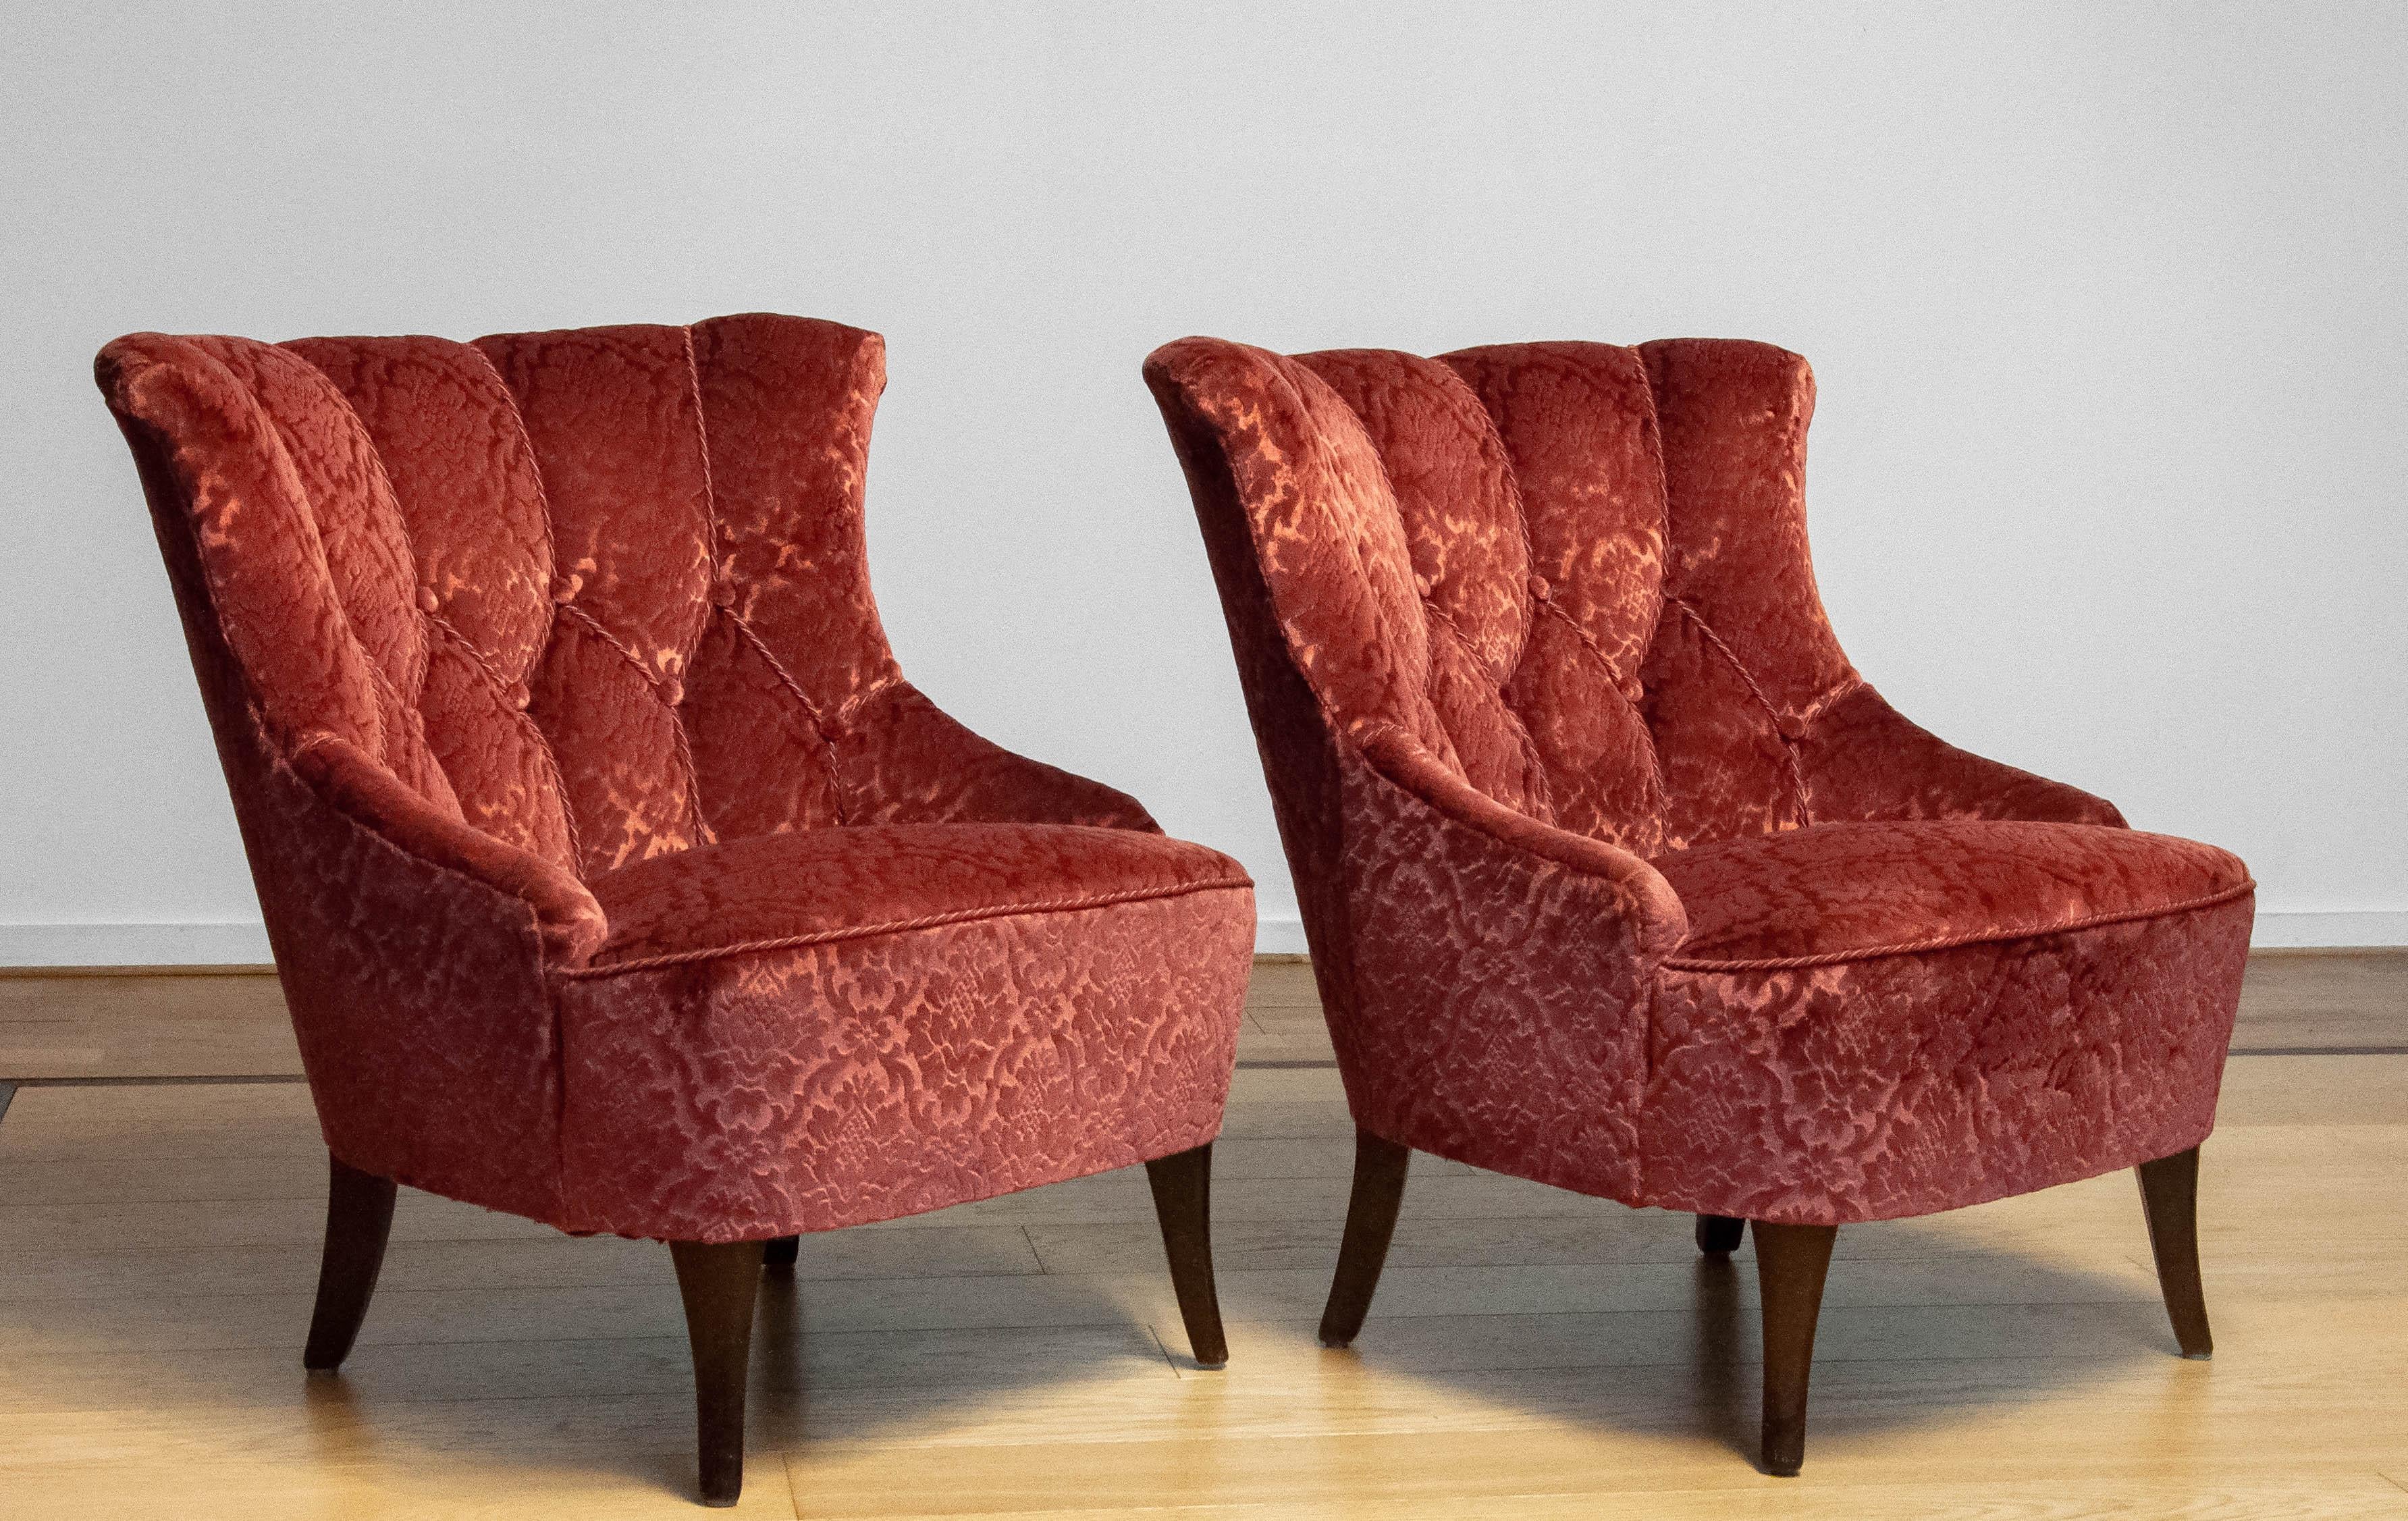 Schöne ( skandinavische ) Napoleon lll Stühle.
Die Stühle sind beide in den 1970er Jahren mit dem Jacquardsamt Brique ton sur ton neu bezogen worden. Gurtband und Federn sind alle in gutem Zustand.
Insgesamt sitzen und stützen die Stühle gut, der